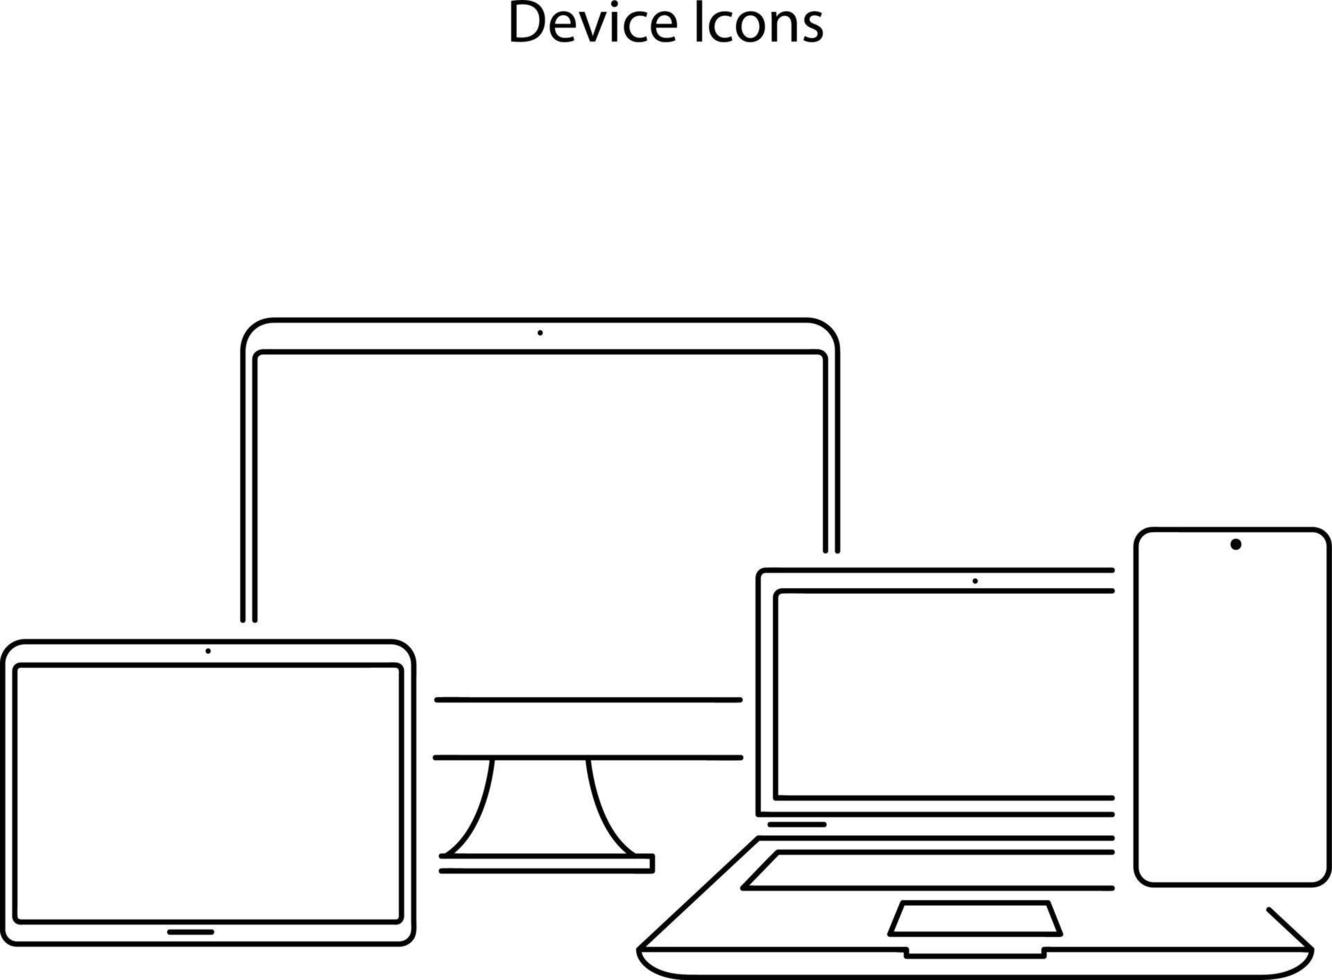 icona dei dispositivi isolati su sfondo bianco. icona dei dispositivi simbolo dei dispositivi alla moda e moderni per logo, web, app, interfaccia utente. segno semplice dell'icona dei dispositivi intelligenti. vettore